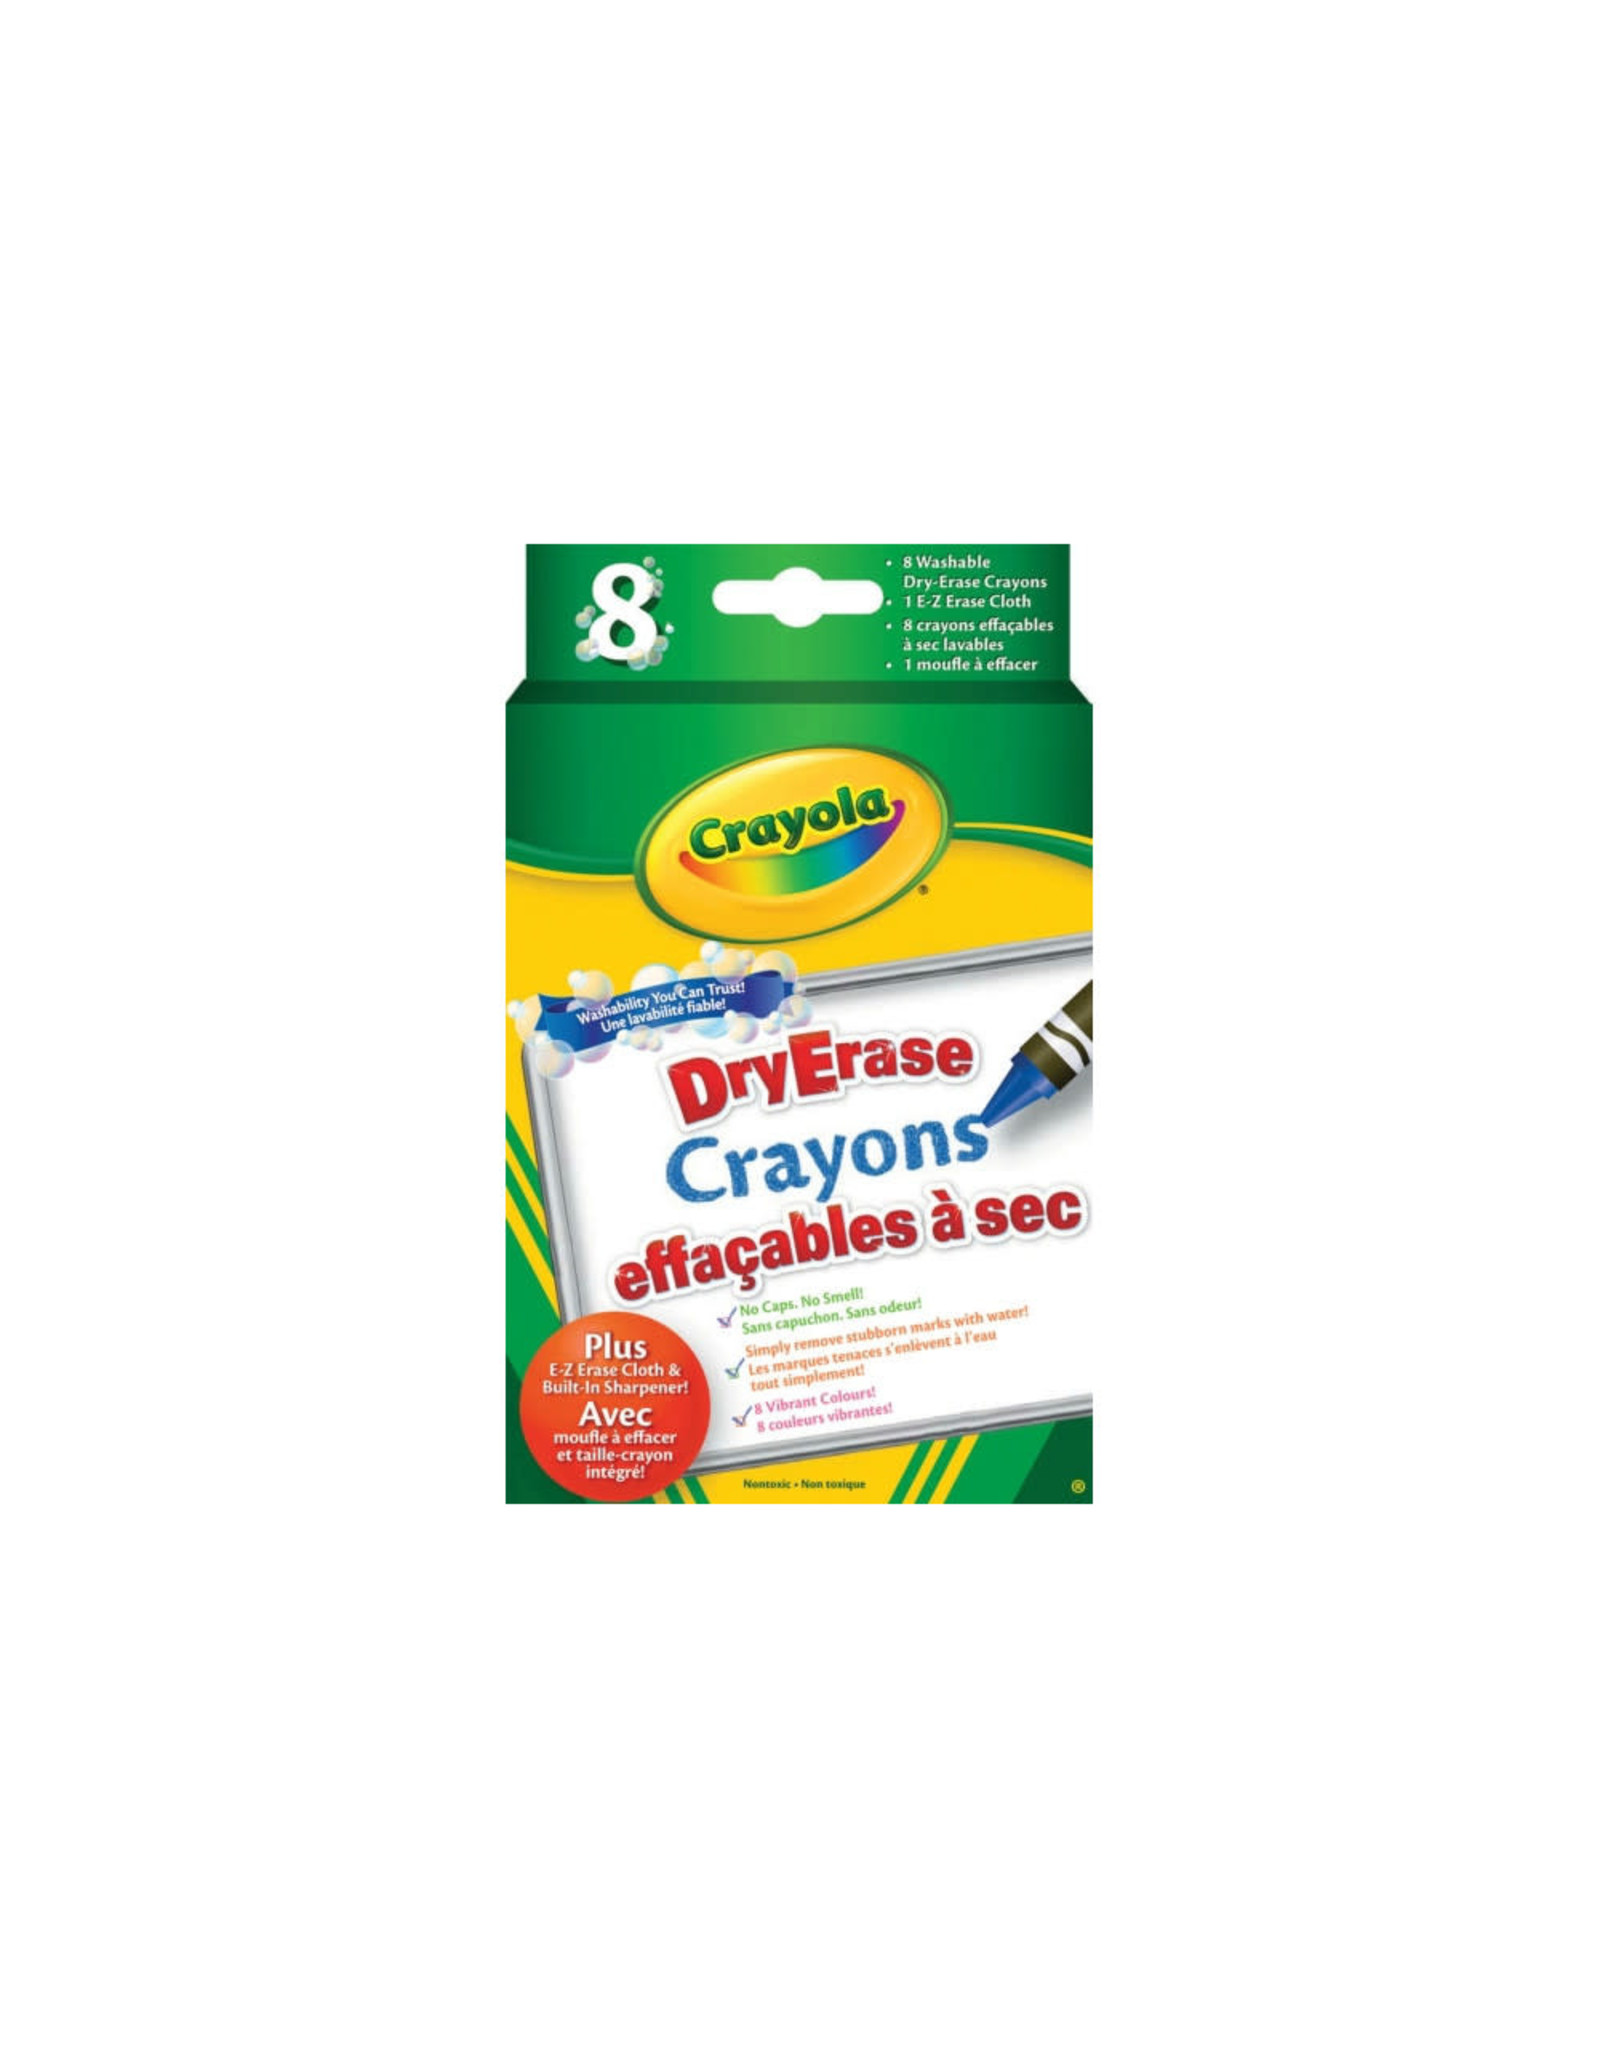 Crayola Crayola Dry Erase Crayons